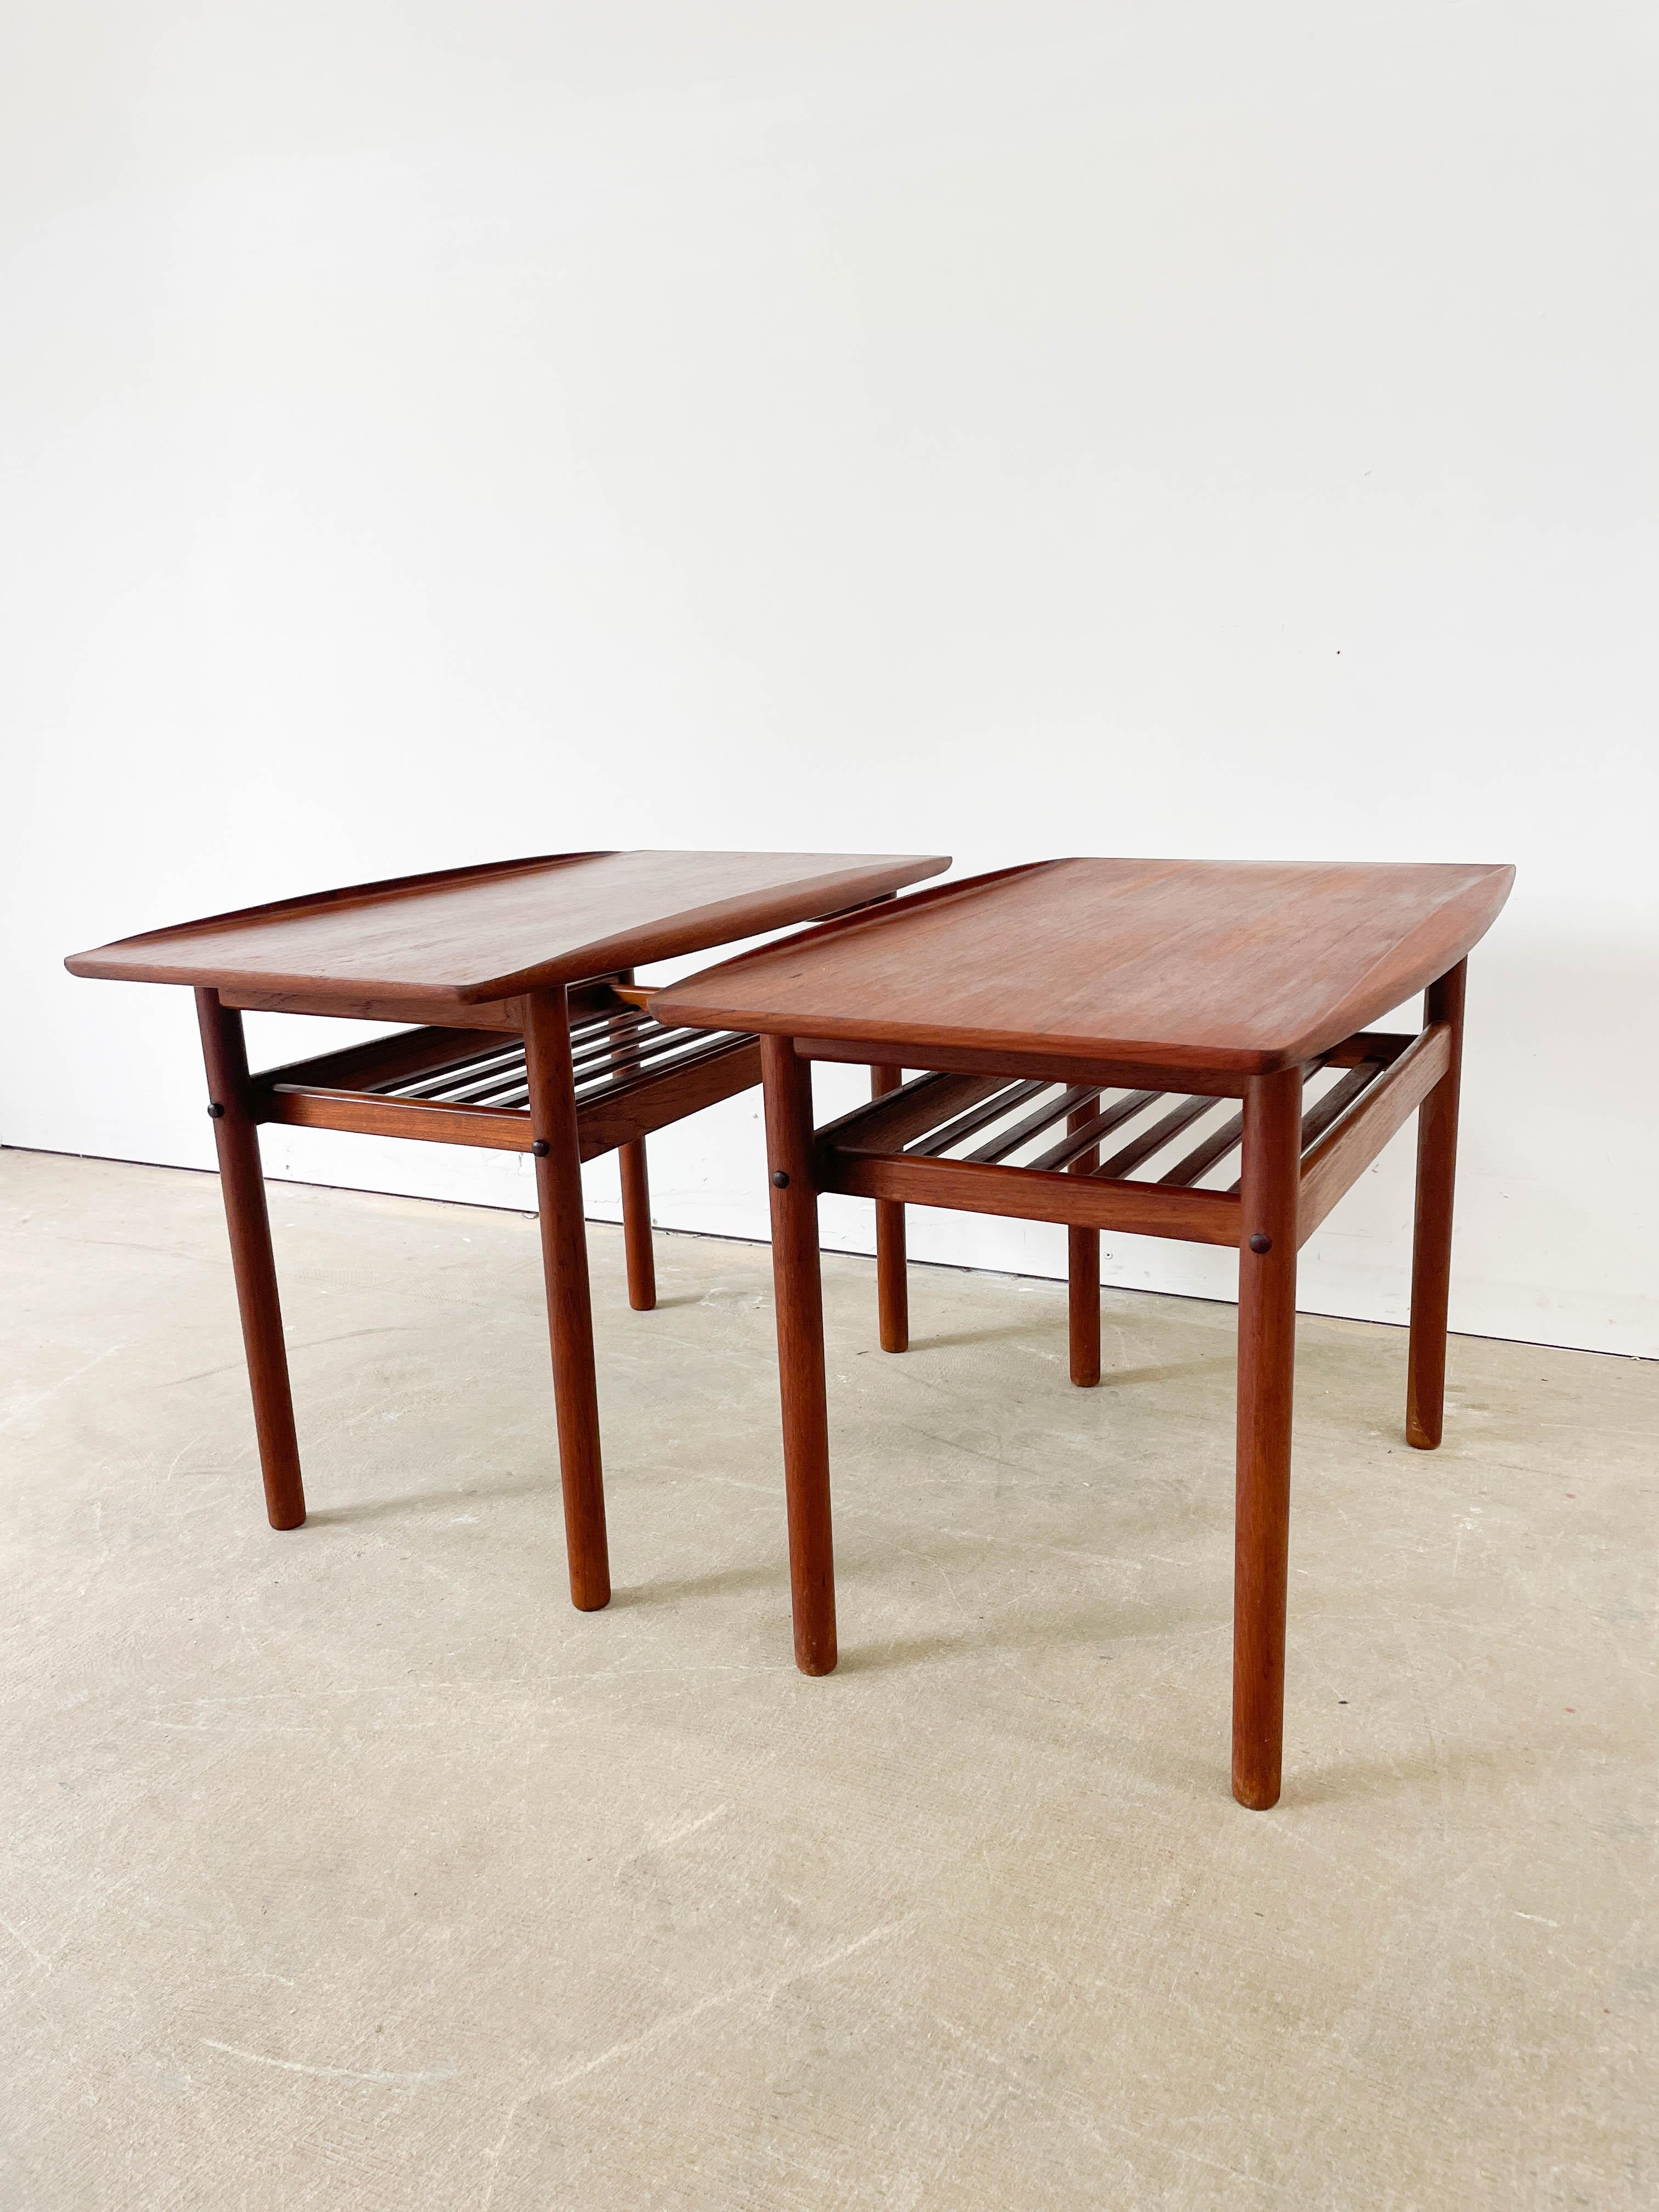 Paire de tables d'appoint en teck conçues par Grete Jalk et fabriquées par P. Jeppesen au Danemark dans les années 1950. Magnifiques plateaux en teck dont les bords sculptés évoquent des vagues déferlantes et sous lesquels se trouve une étagère à